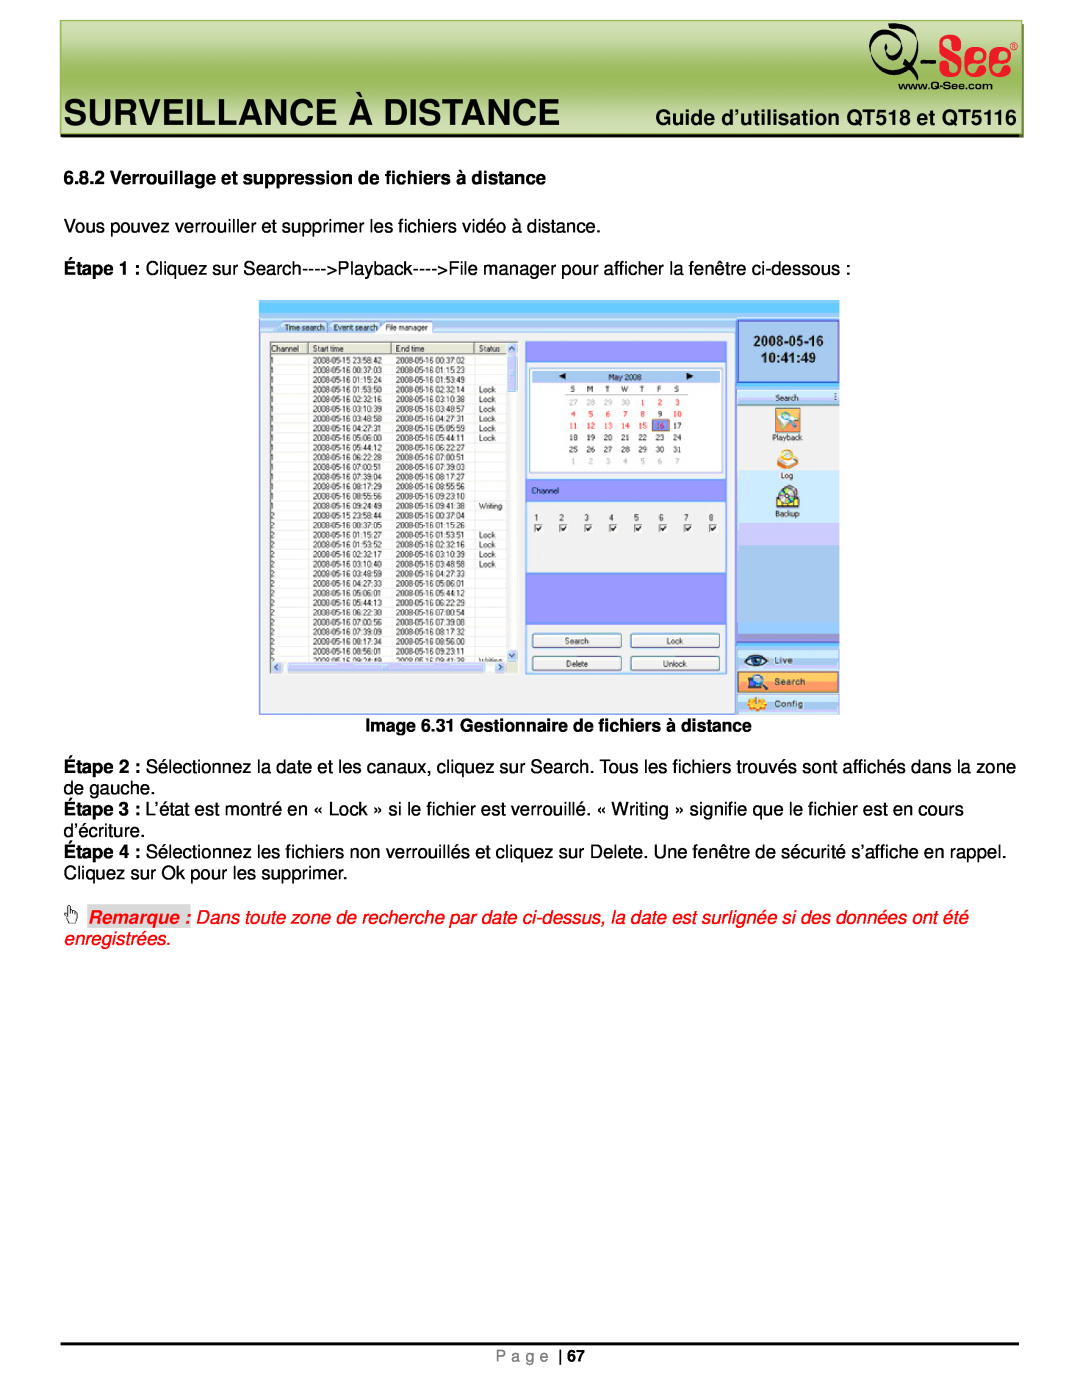 Q-See Surveillance À Distance, Guide d’utilisation QT518 et QT5116, Image 6.31 Gestionnaire de fichiers à distance 